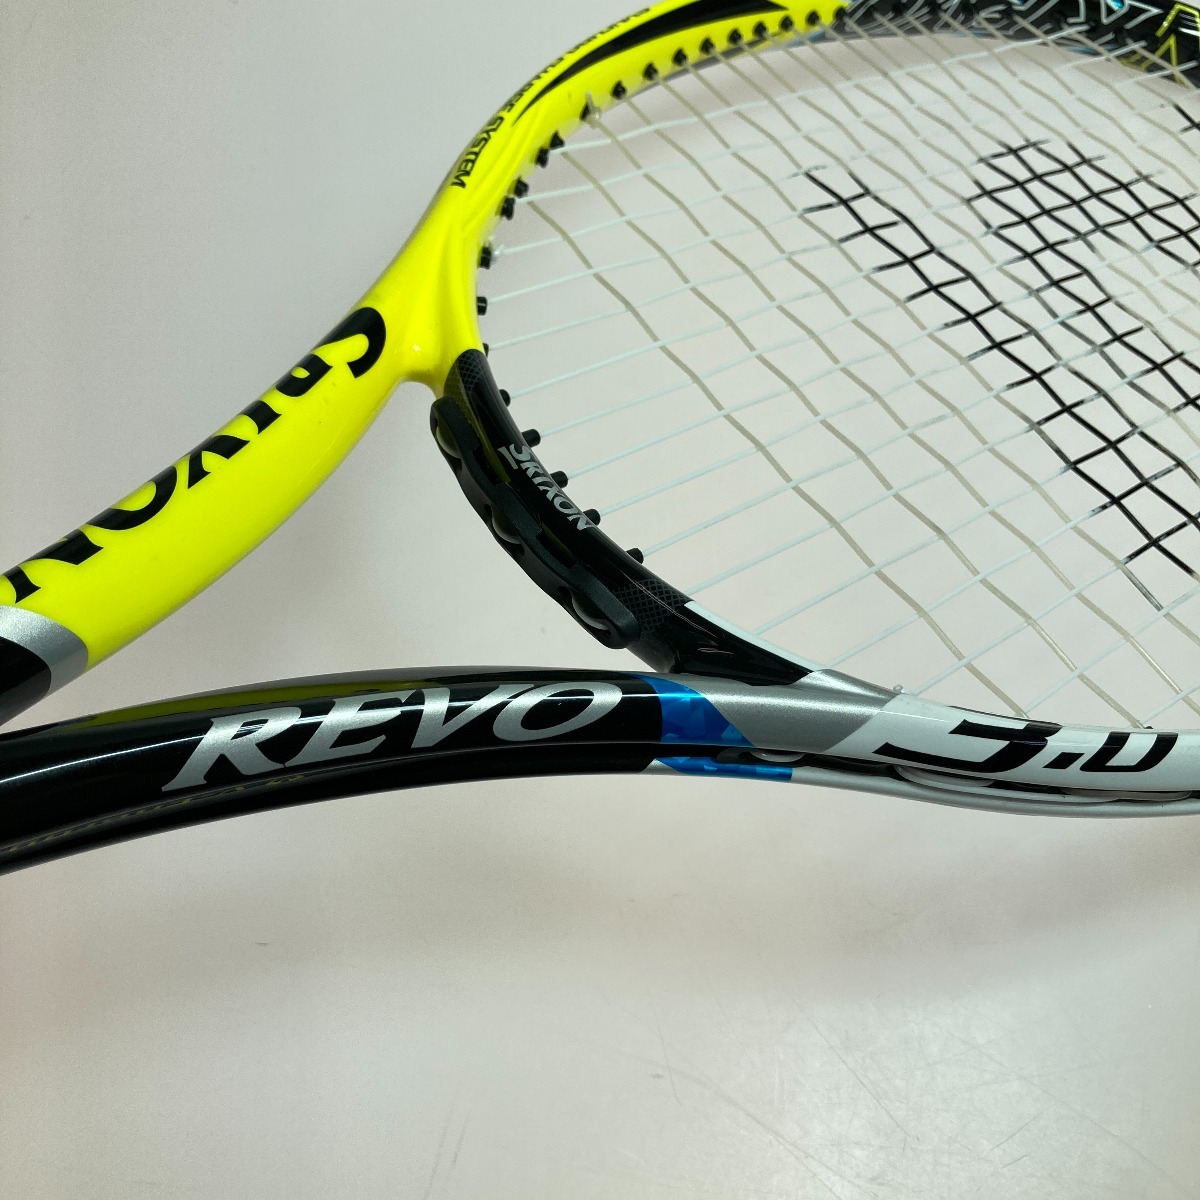 ◎◎ DUNLOP ダンロップ SRIXON スリクソン REVO レヴォ 3.0 硬式テニスラケット #2 傷や汚れあり_画像3